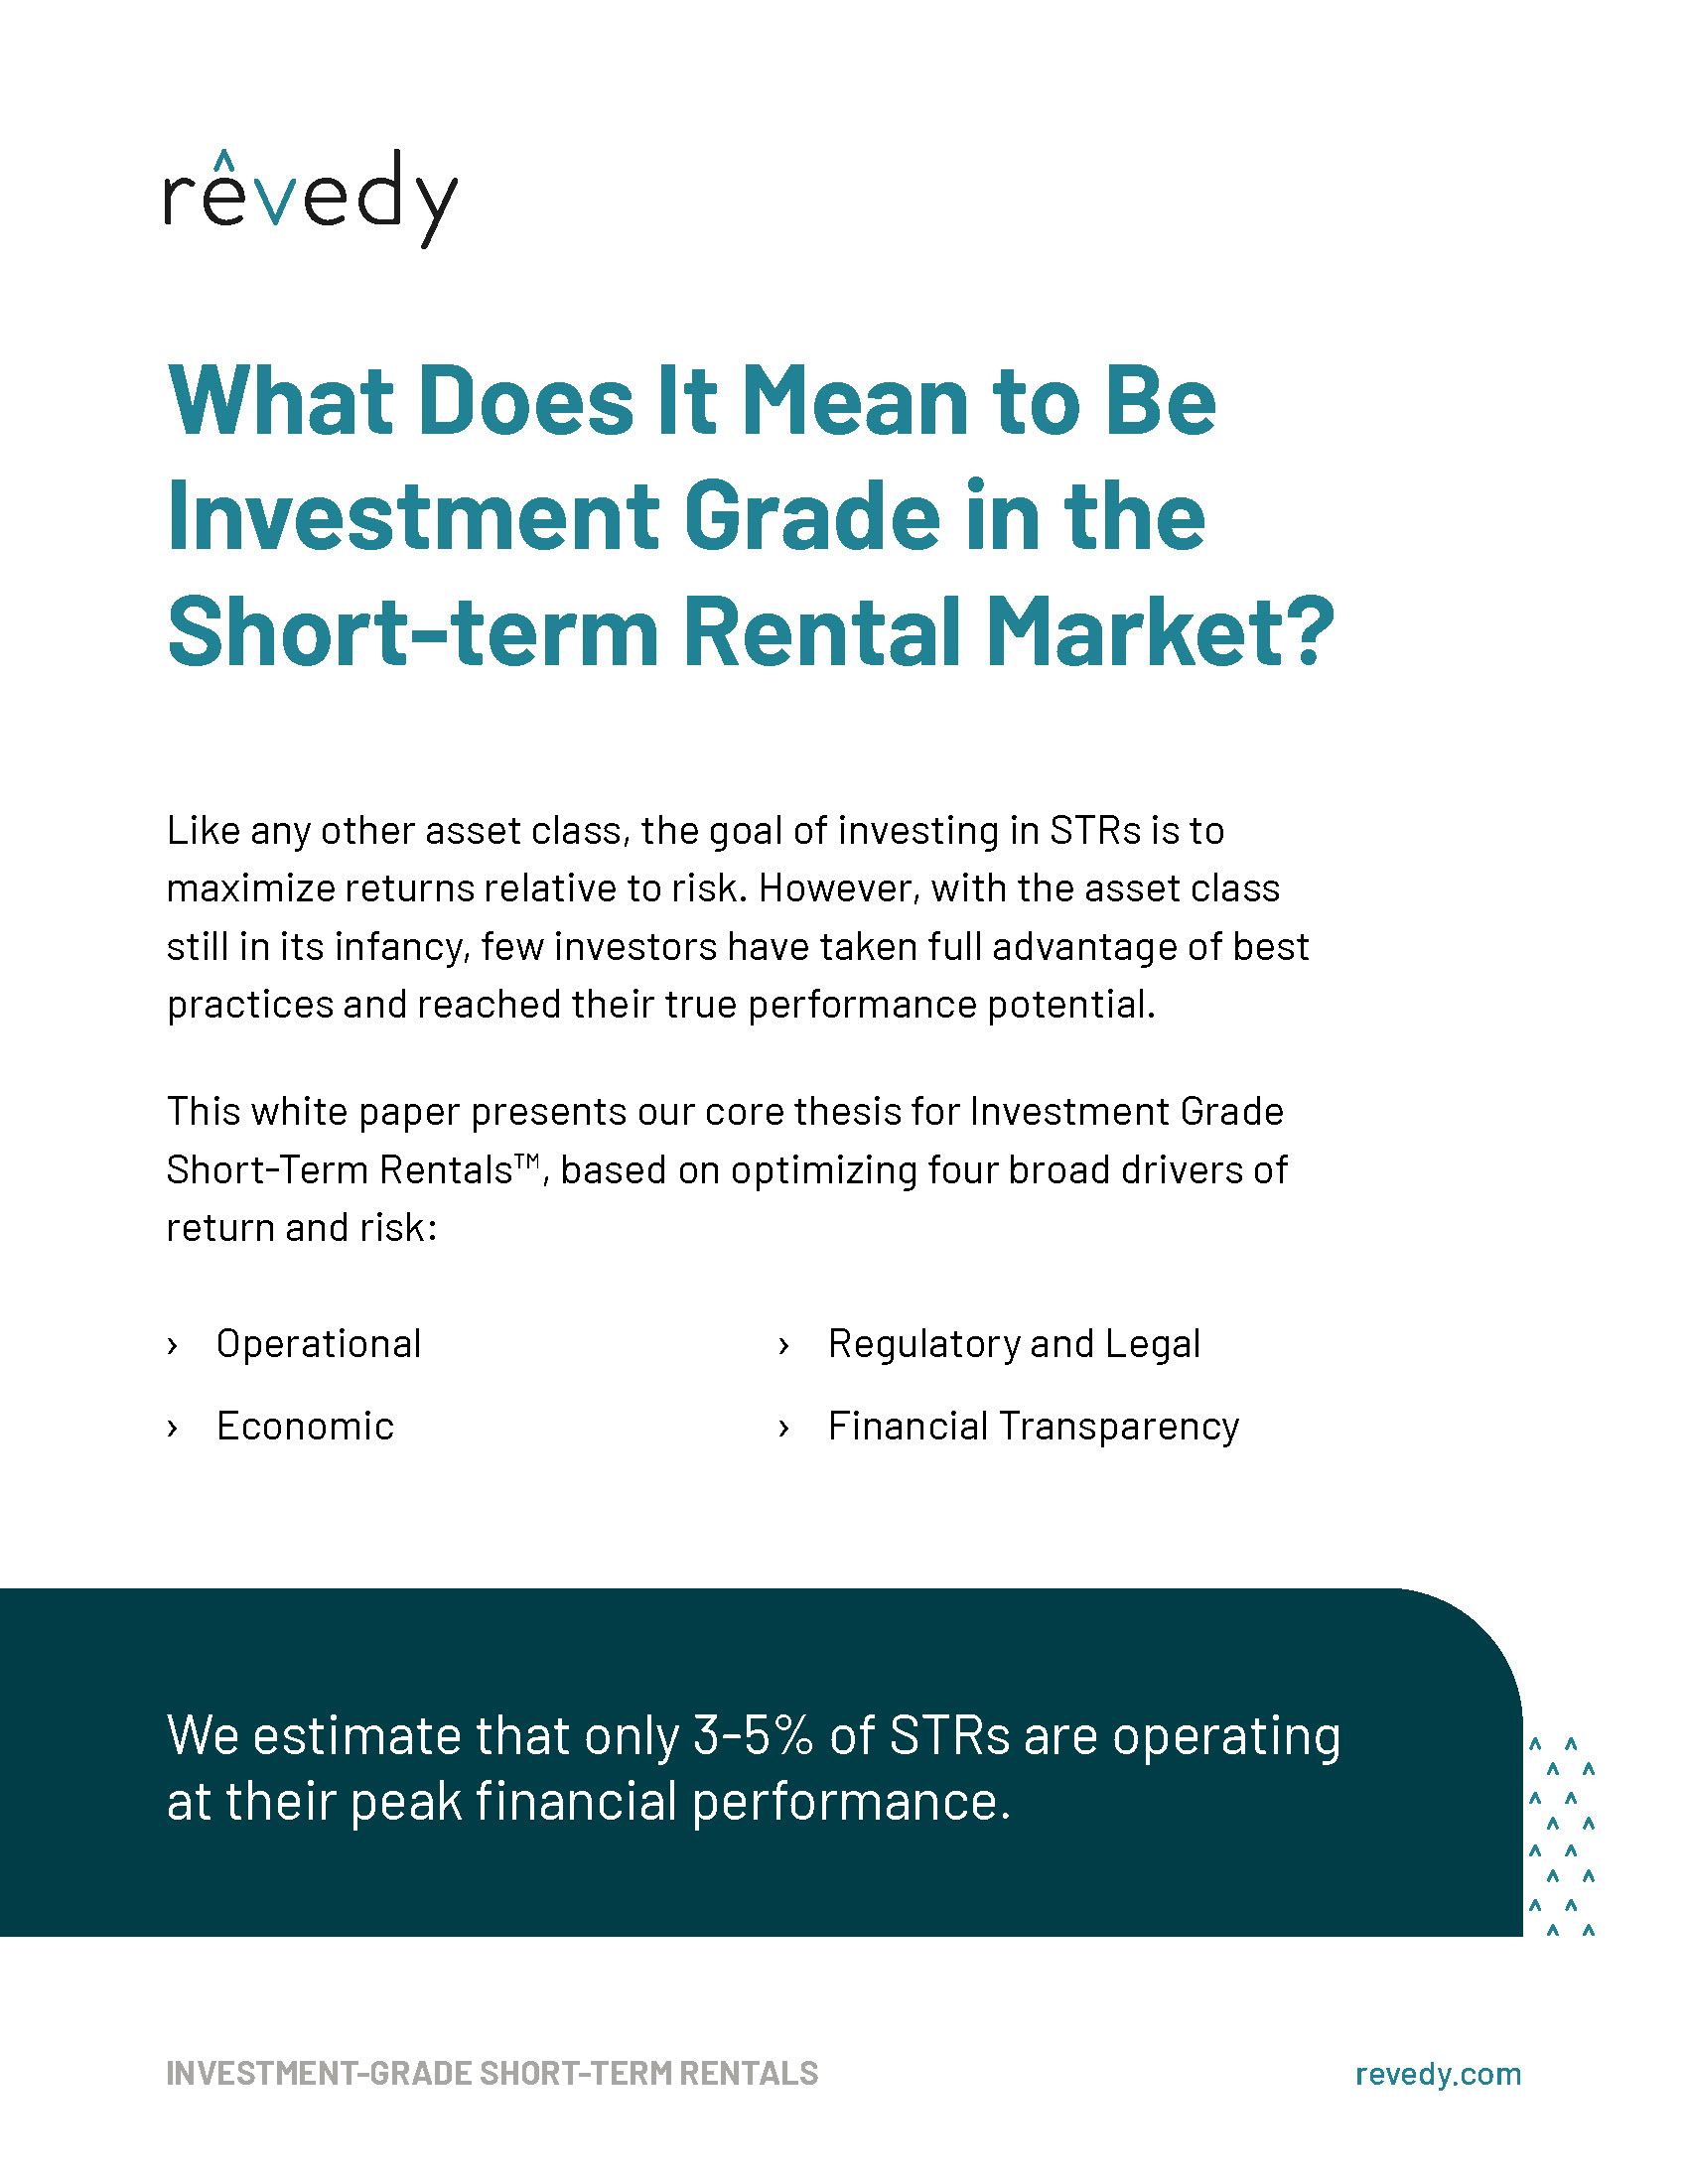 Investment Grade Short-Term Rentals